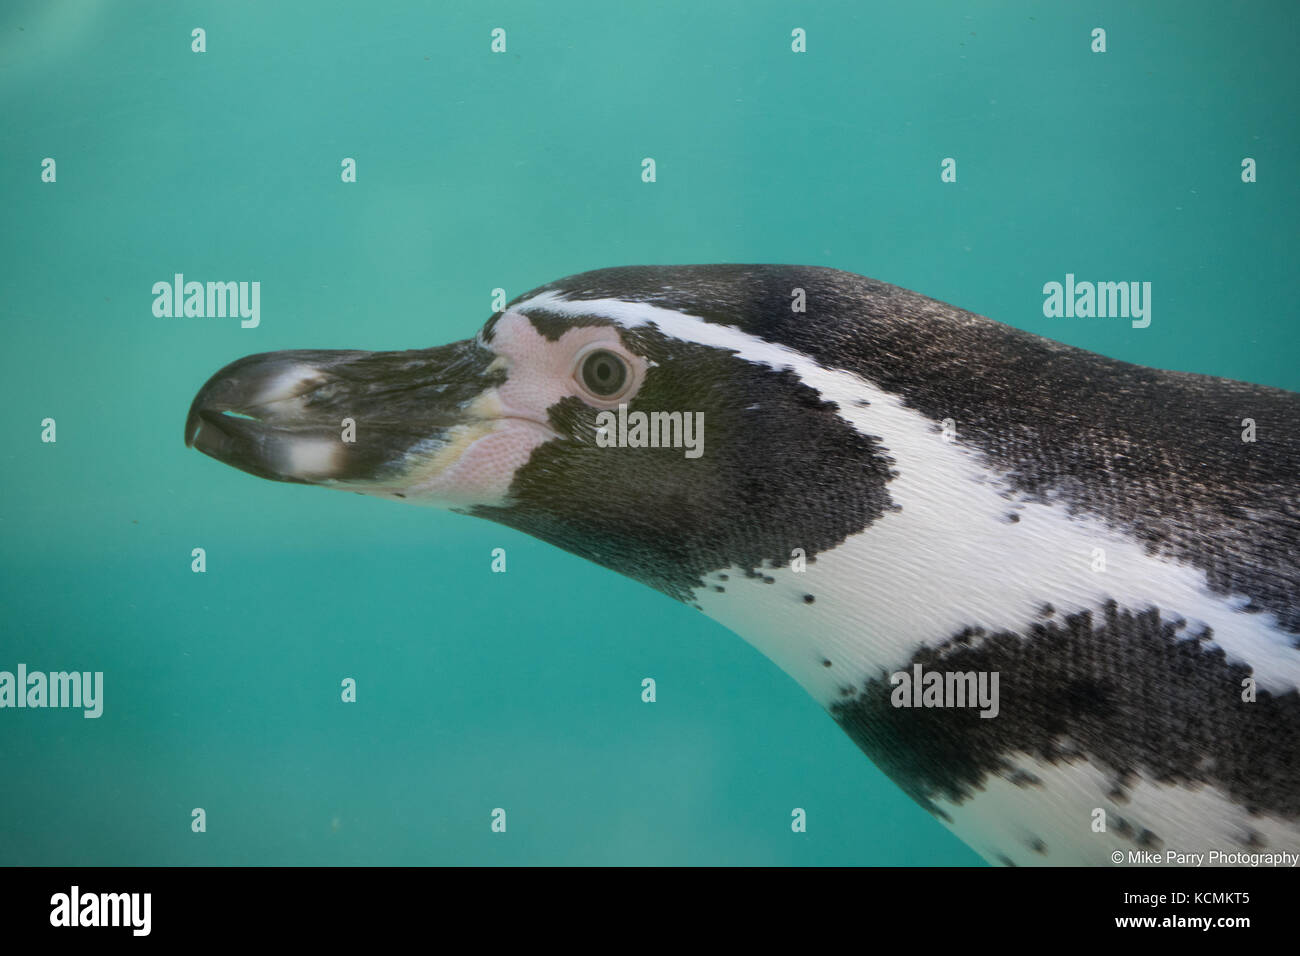 Humboldt Penguin Stock Photo